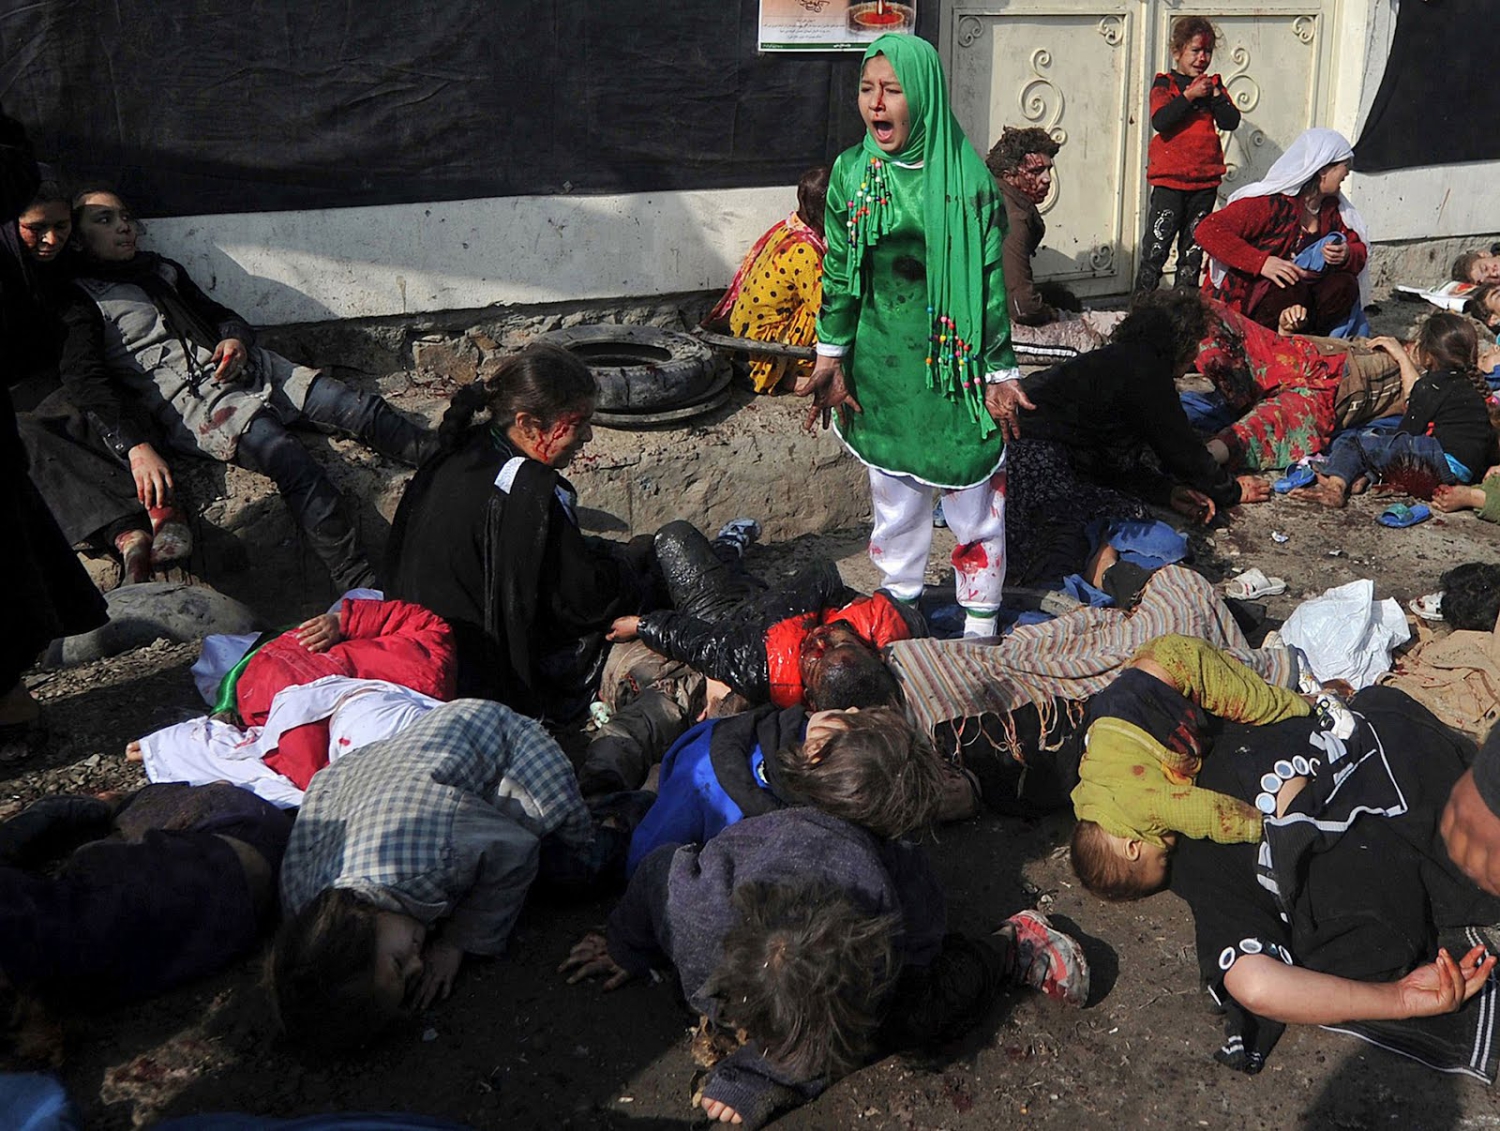 El grito desgarrador tras un atentado en Kabul, premio Pulitzer 2012